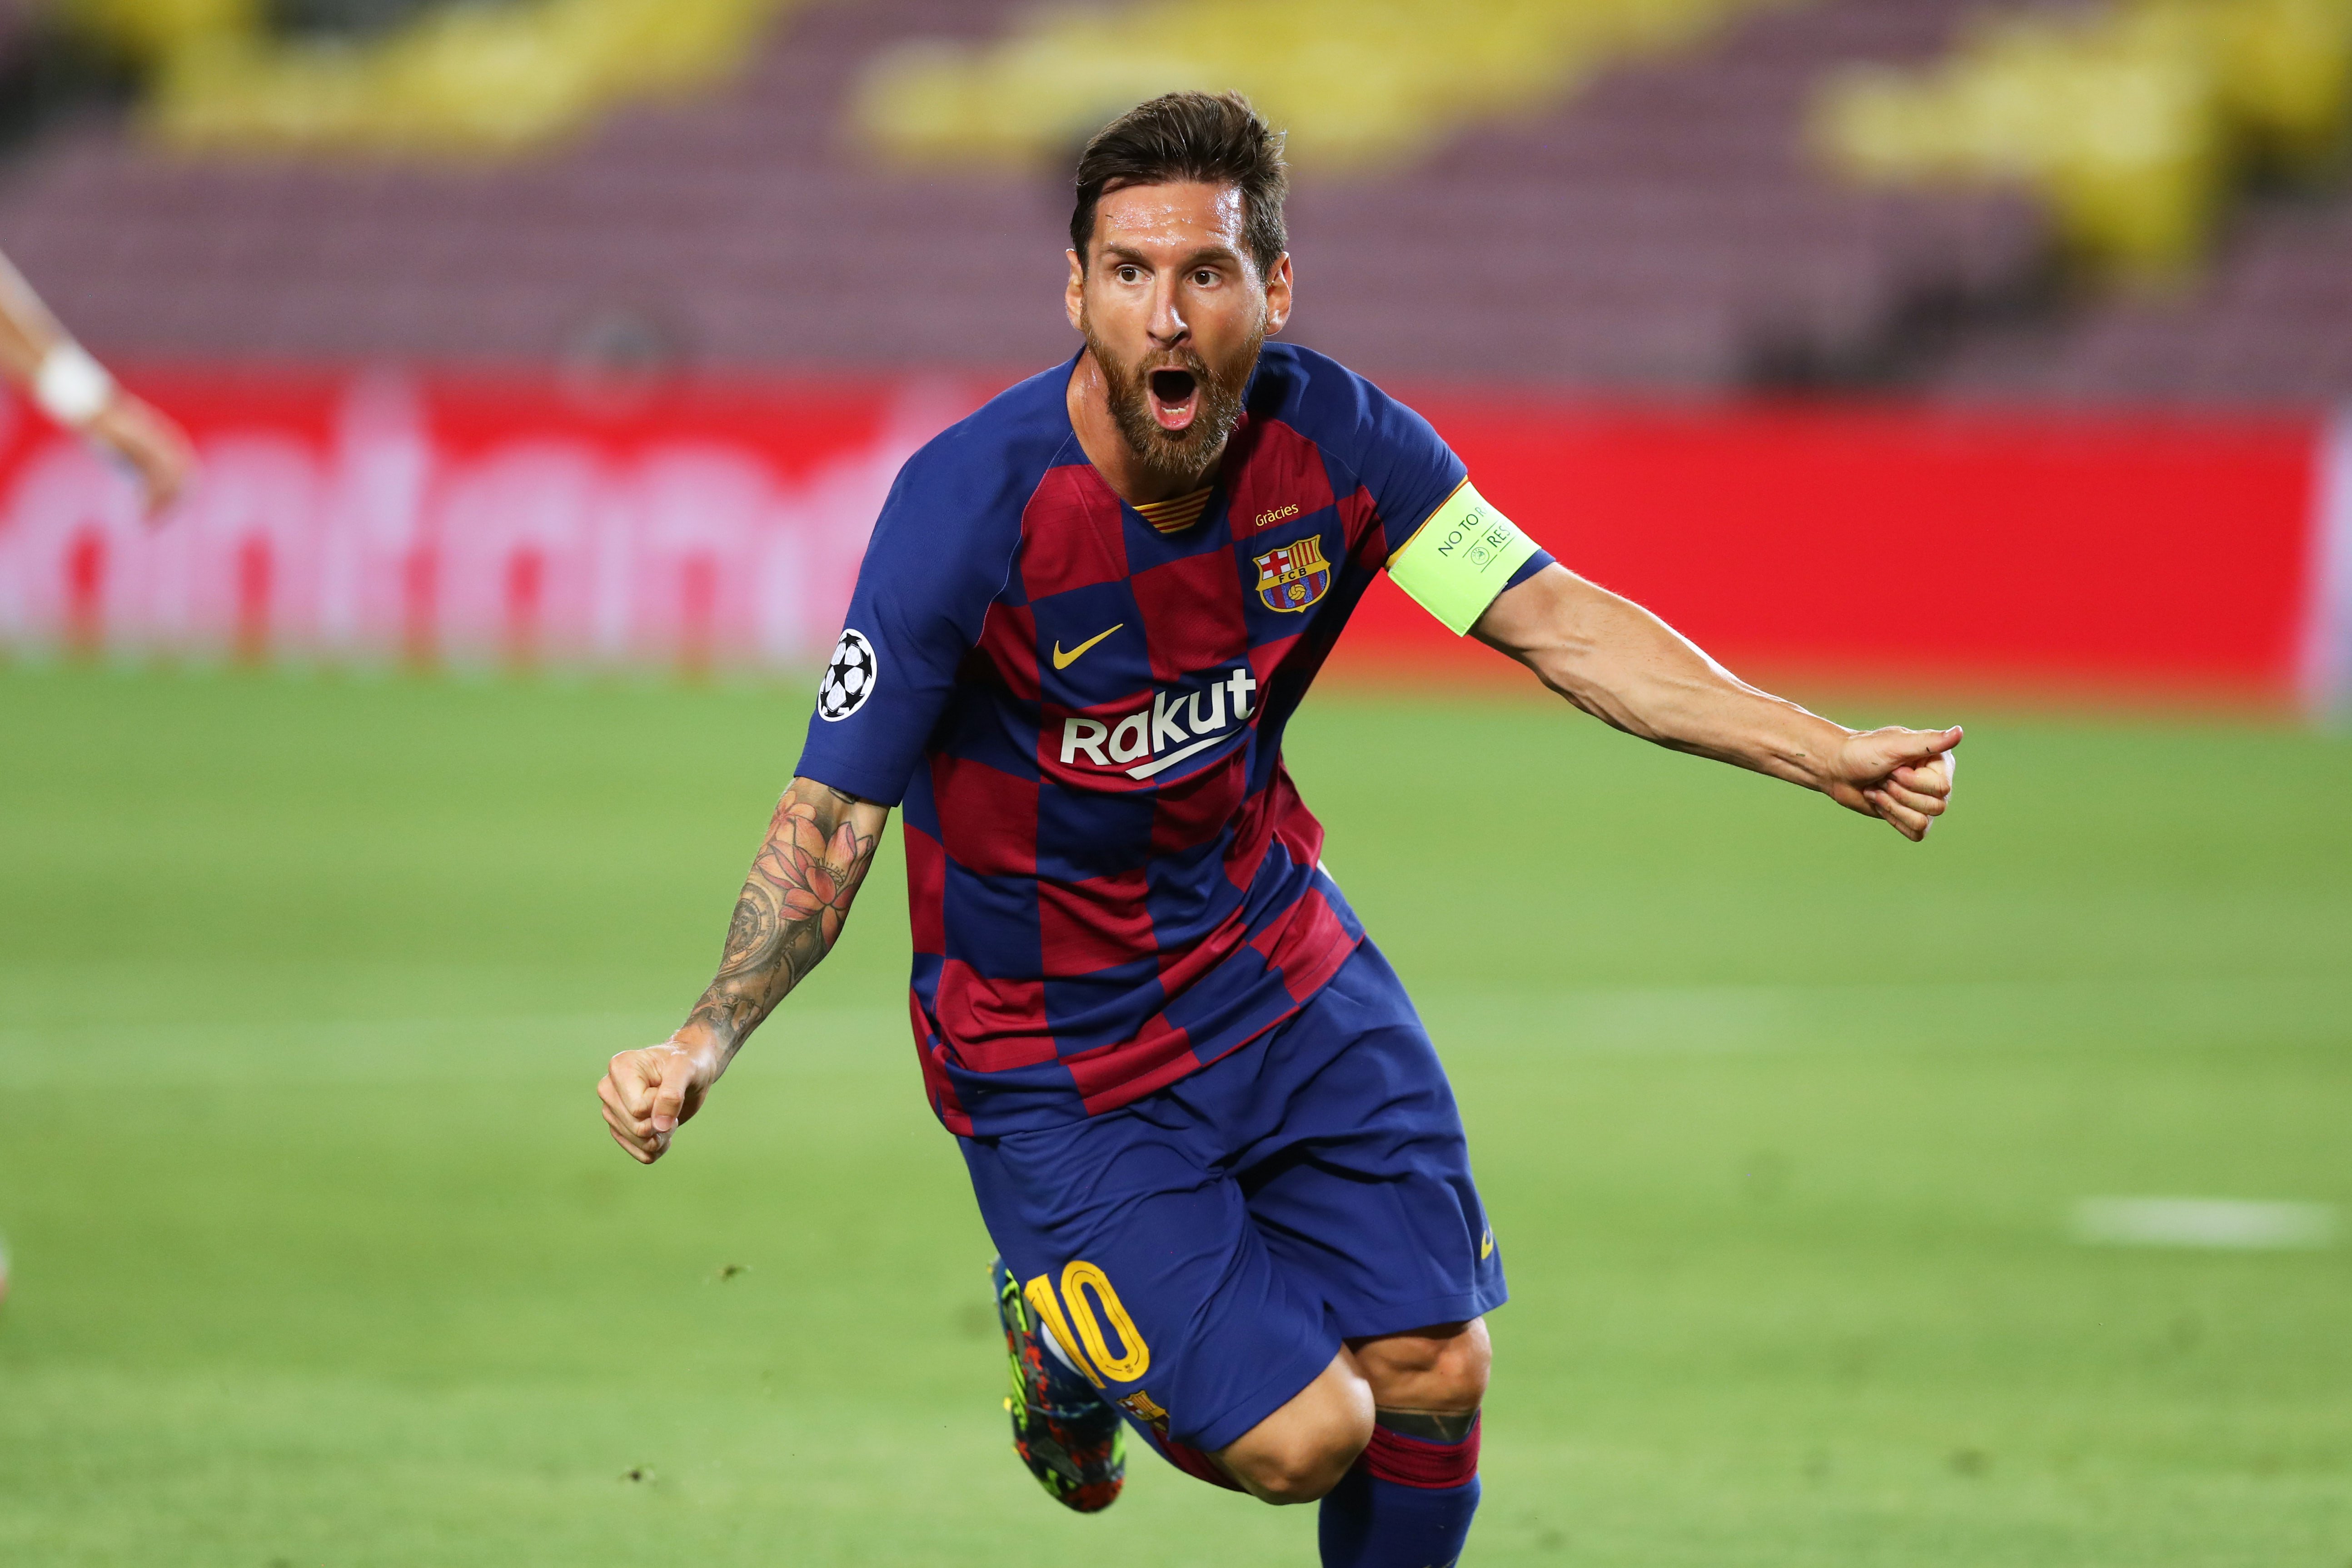 Messi, "dolgut" perquè s'hagi dubtat del seu barcelonisme